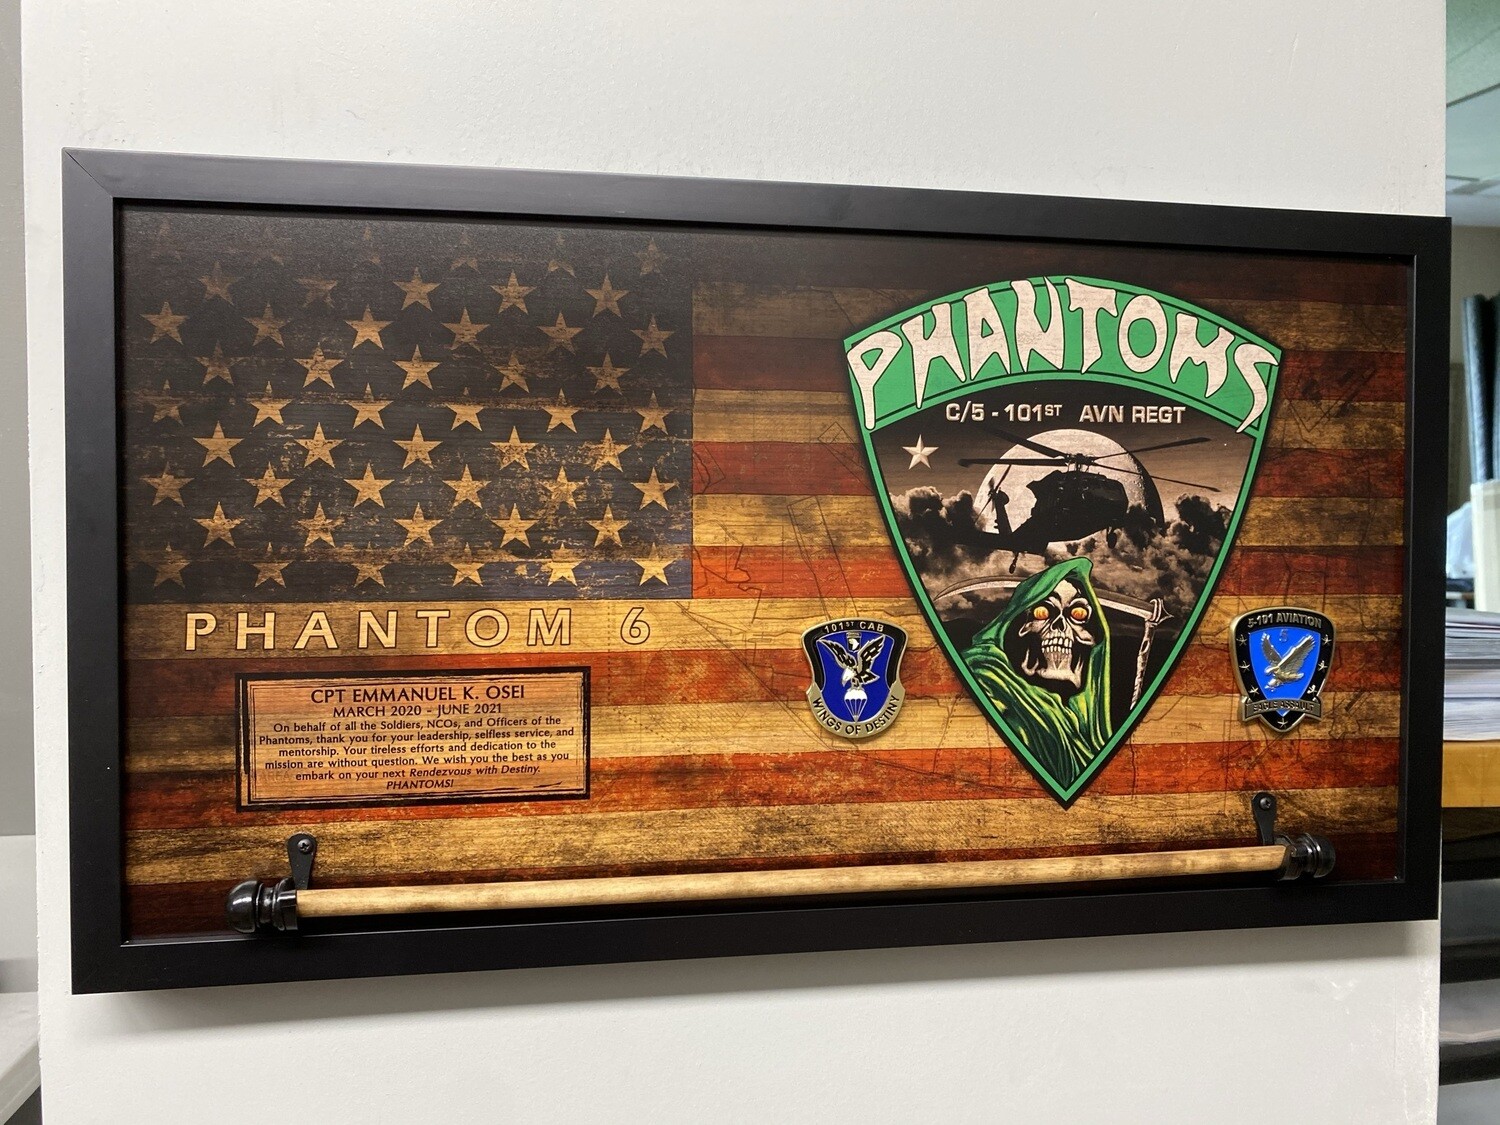 C Co "Phantoms" 5-101 AVN Rustic Flag Plaque - 28.5"x15.75"